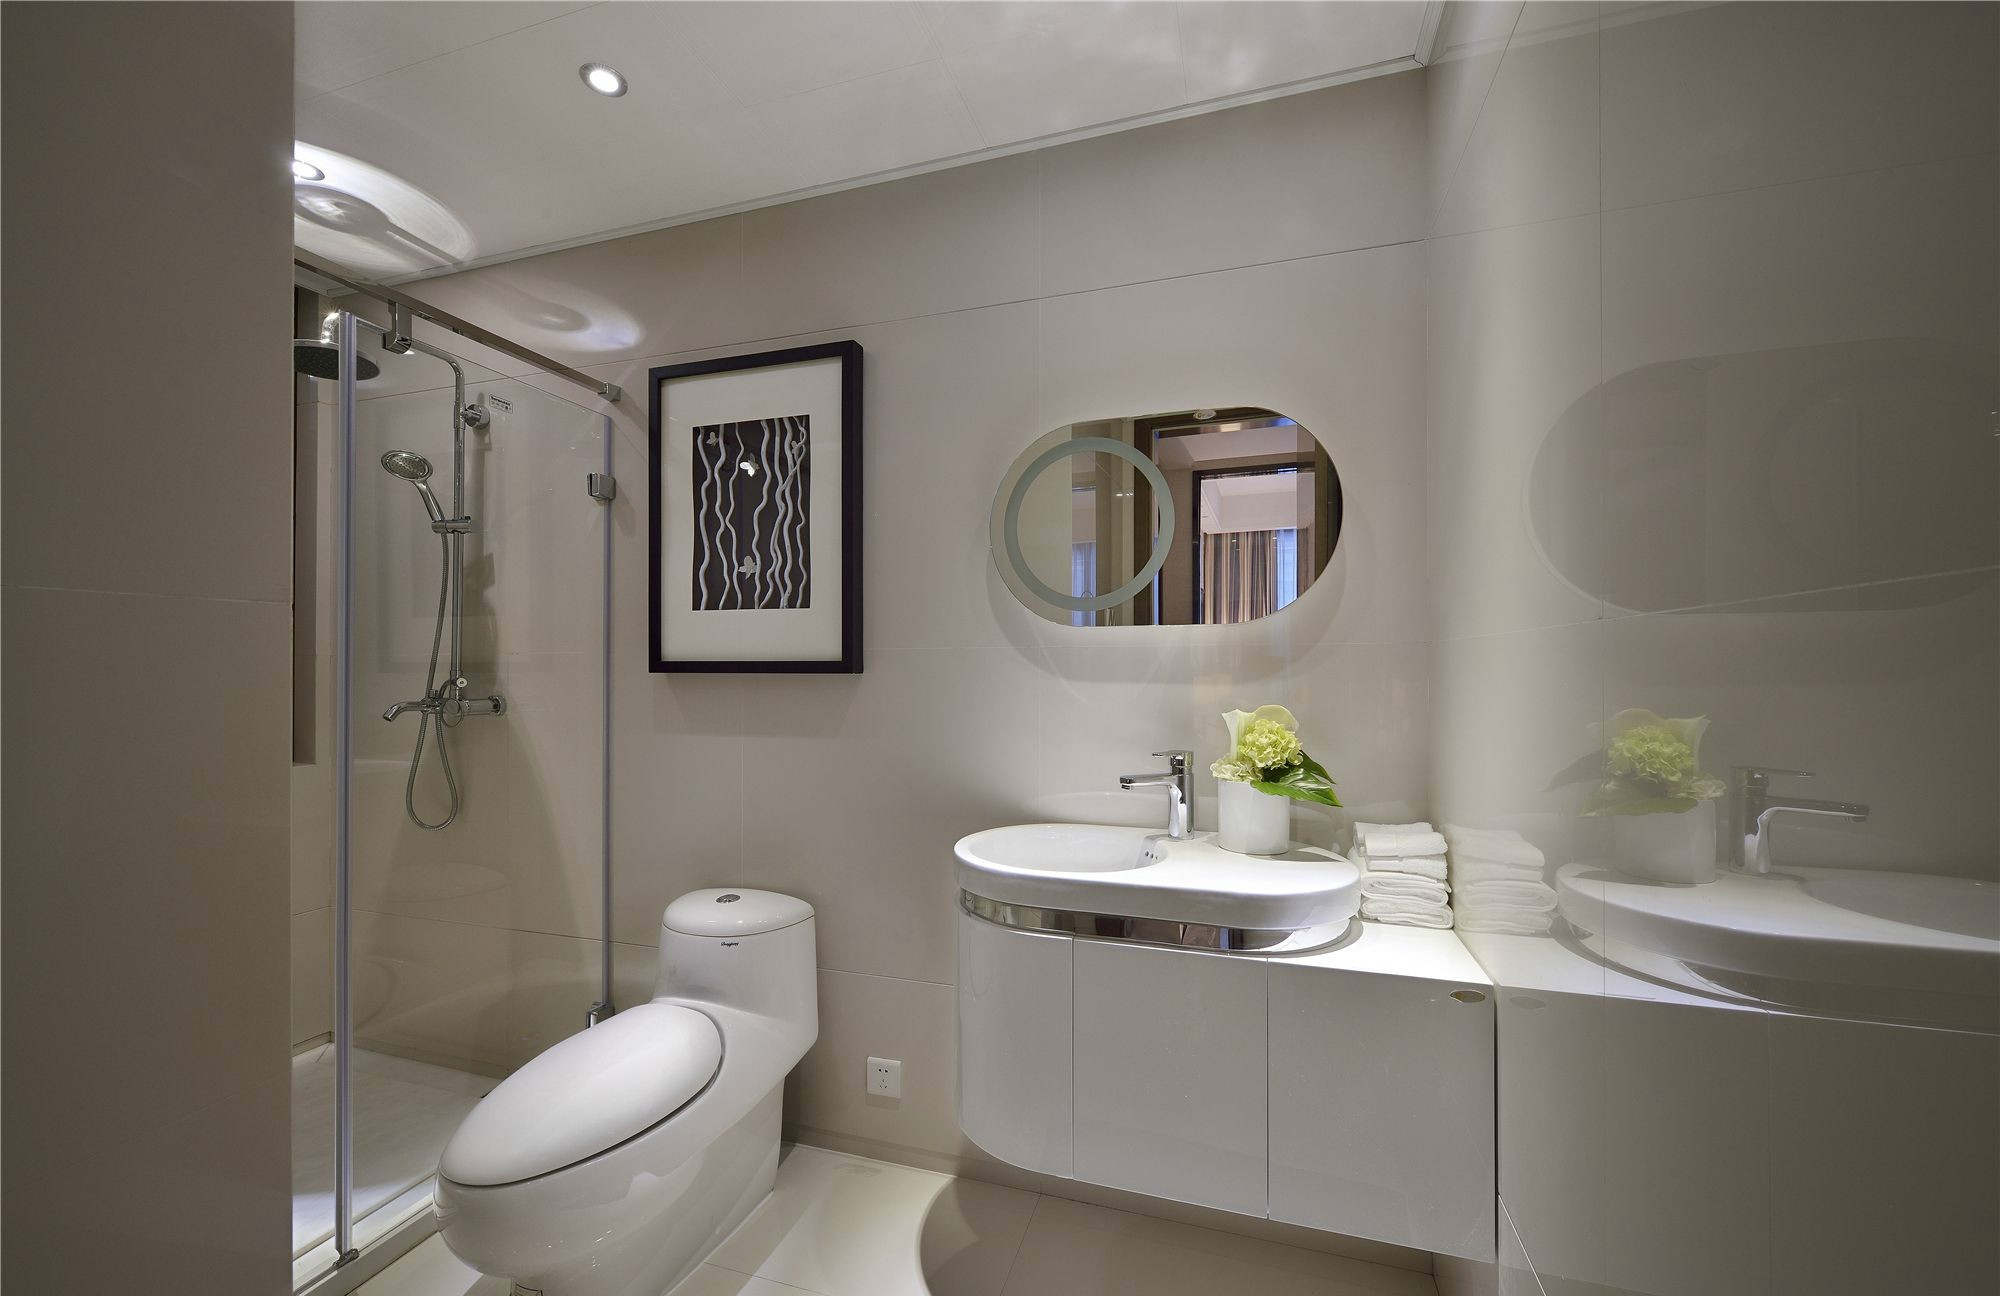 整个卫浴空间给人以简单优雅的感觉，干湿分离设计使空间更为有序。